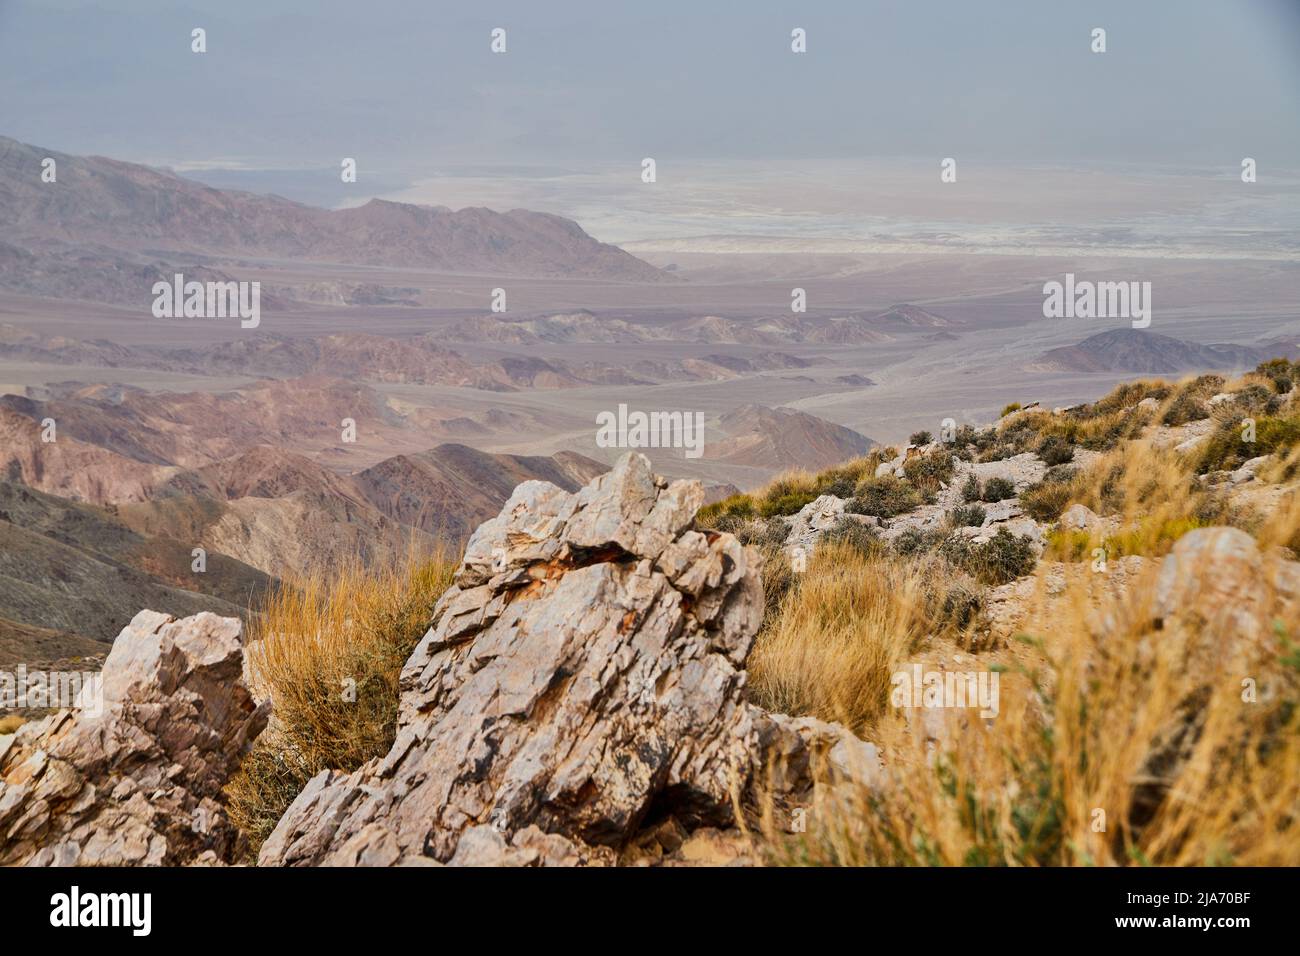 La Valle della morte offre una vista mozzafiato dalla cima delle montagne Foto Stock